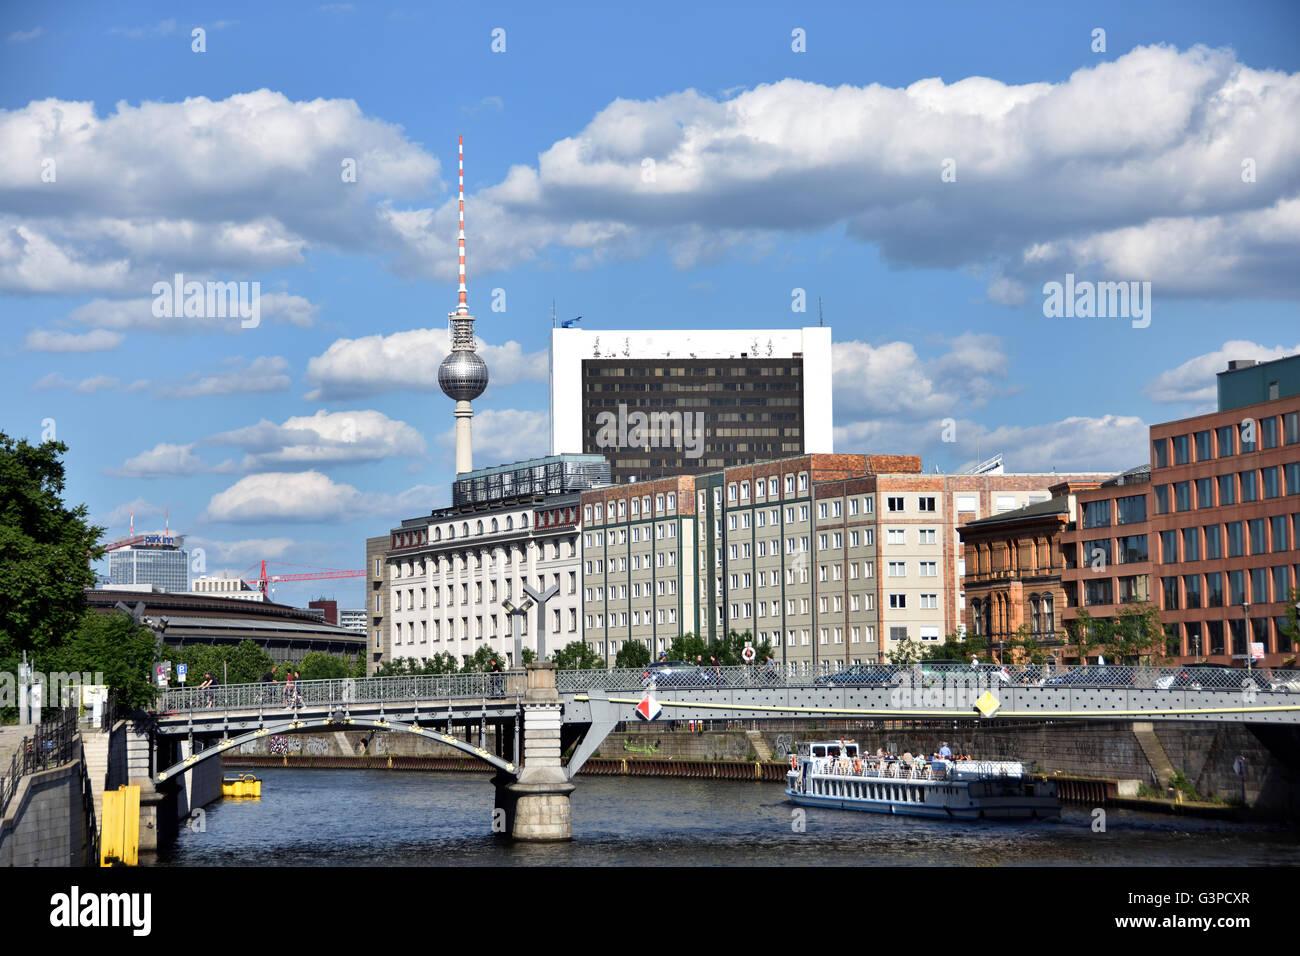 The modern buildings complex near ( Regierungsviertel - Bundestages - Reichstag parliament ) River Spree Berlin Germany ( Fernsehturm TV Television Tower ) Stock Photo